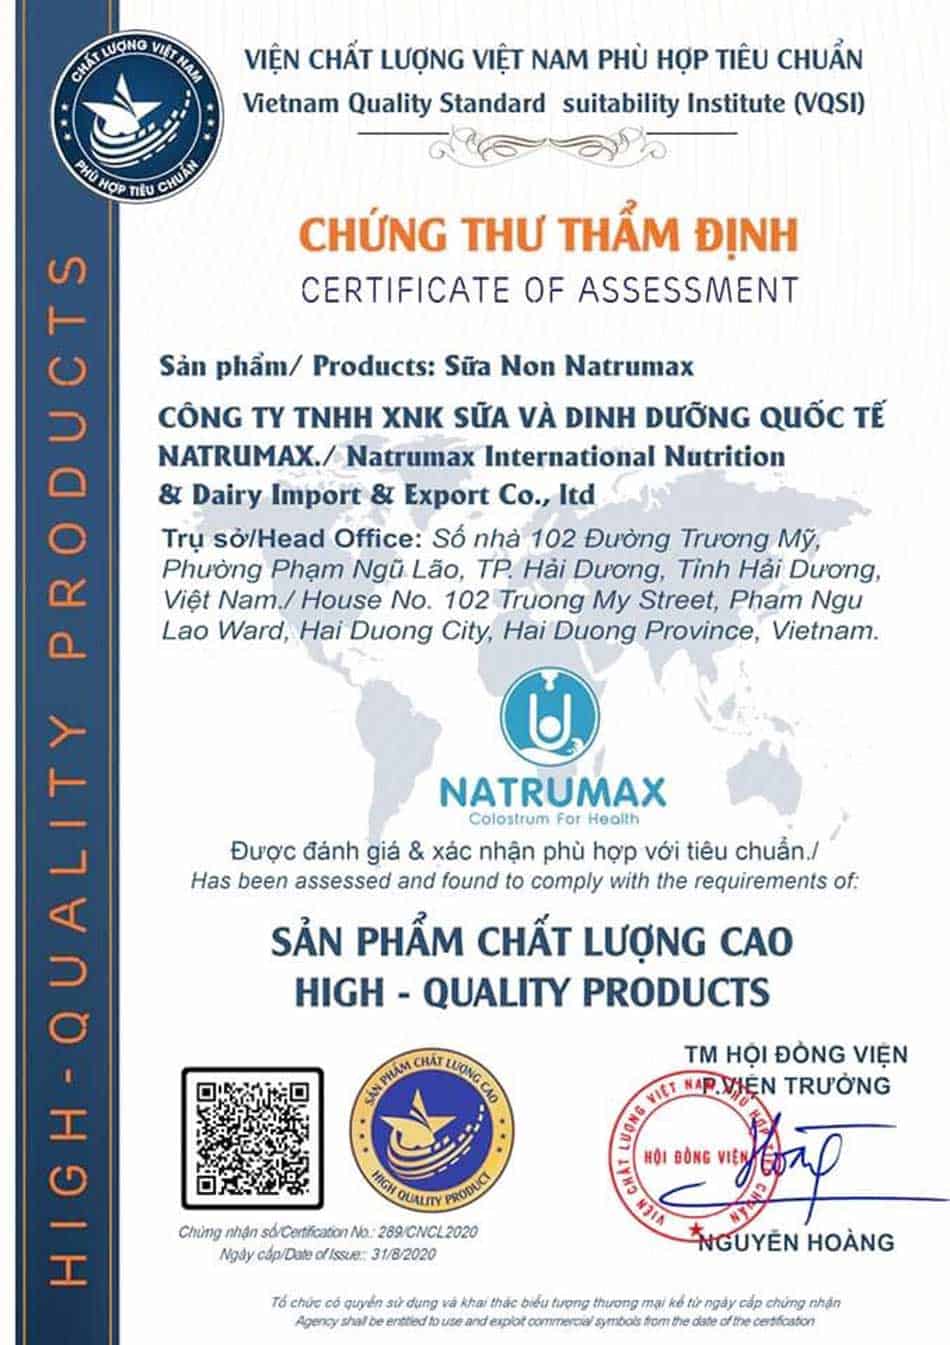 Công ty TNHH Sữa và Dinh dưỡng Quốc tế Natrumax được chứng nhận sản phẩm chất lượng cao